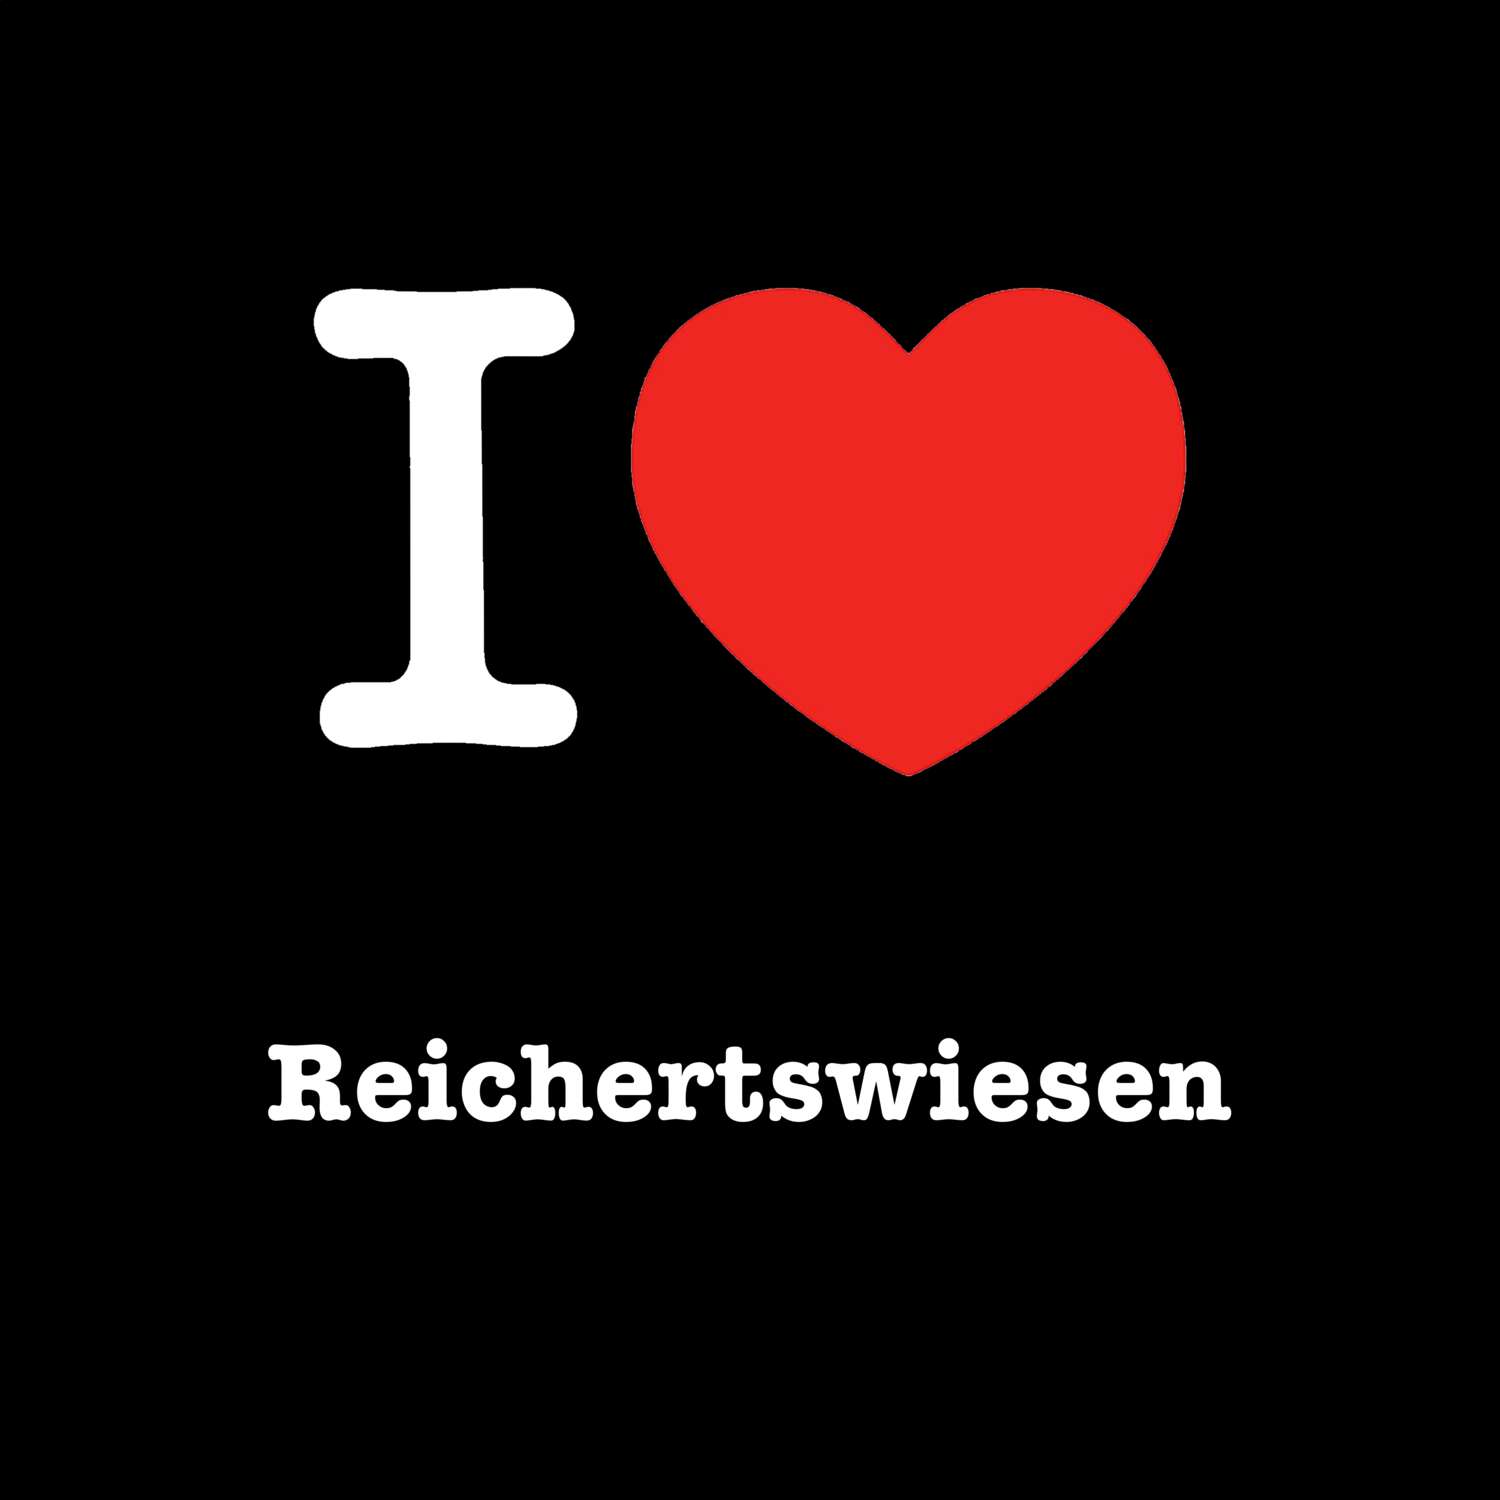 Reichertswiesen T-Shirt »I love«